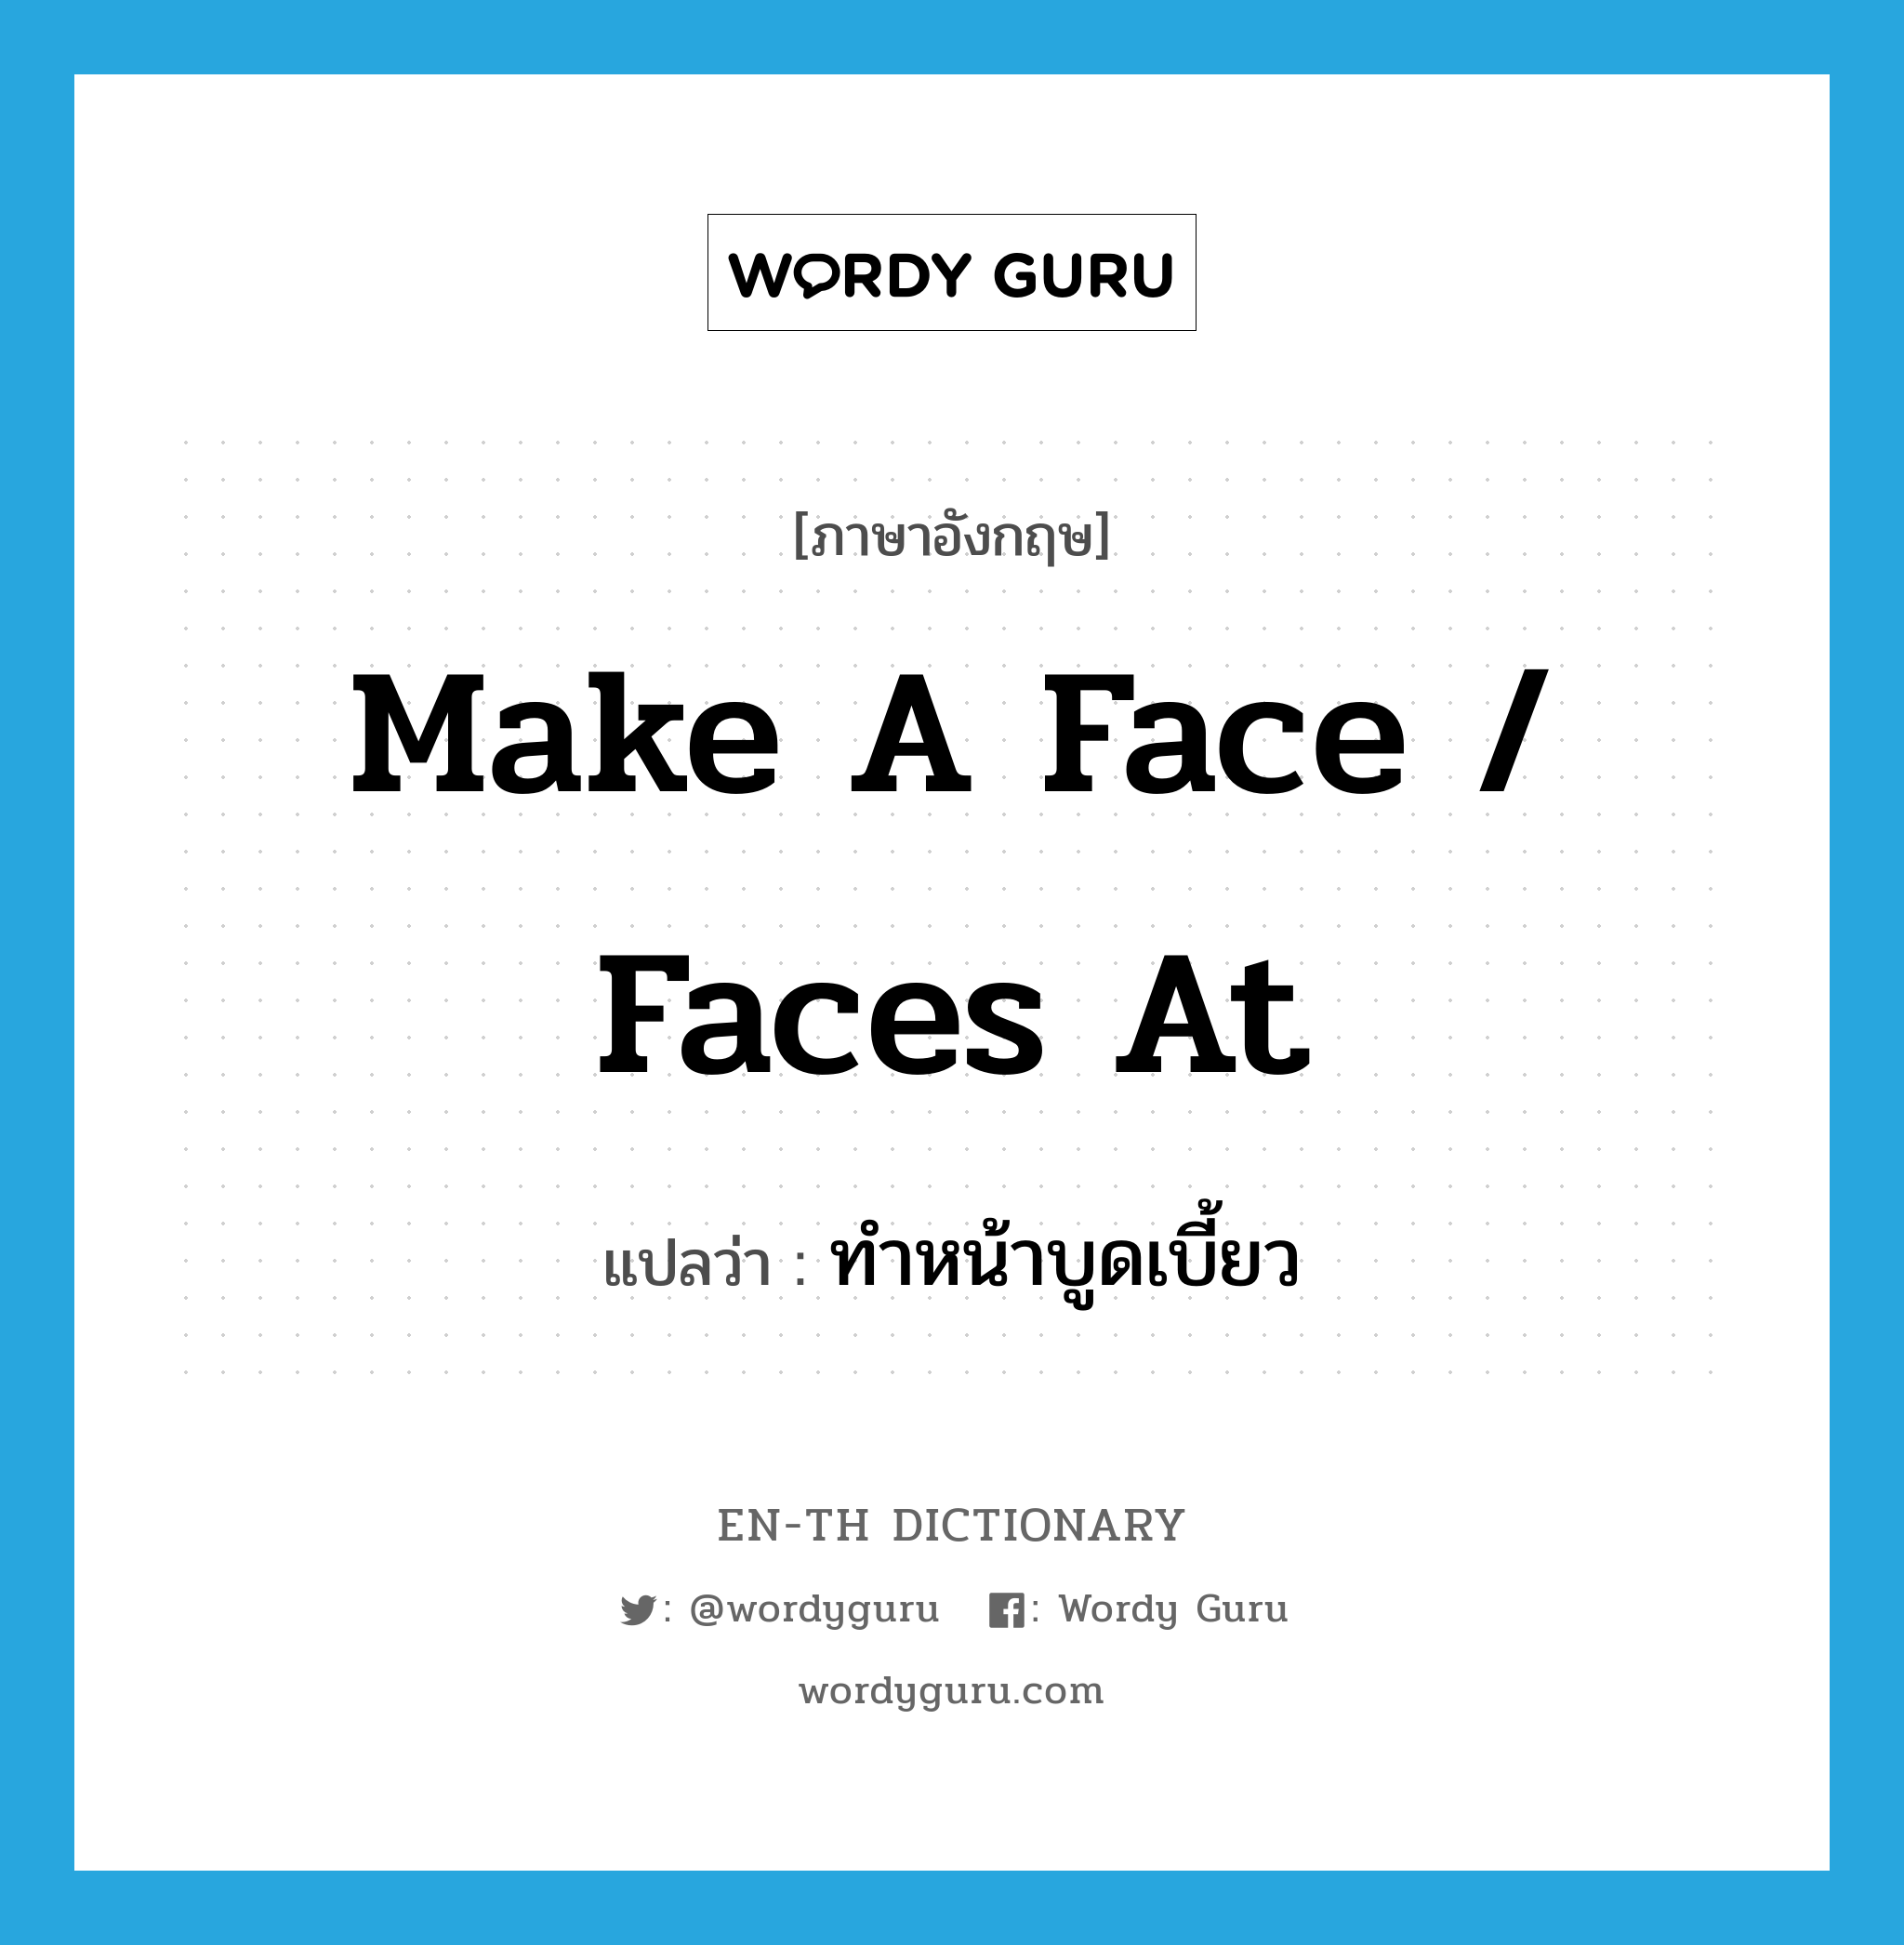 ทำหน้าบูดเบี้ยว ภาษาอังกฤษ?, คำศัพท์ภาษาอังกฤษ ทำหน้าบูดเบี้ยว แปลว่า make a face / faces at ประเภท IDM หมวด IDM